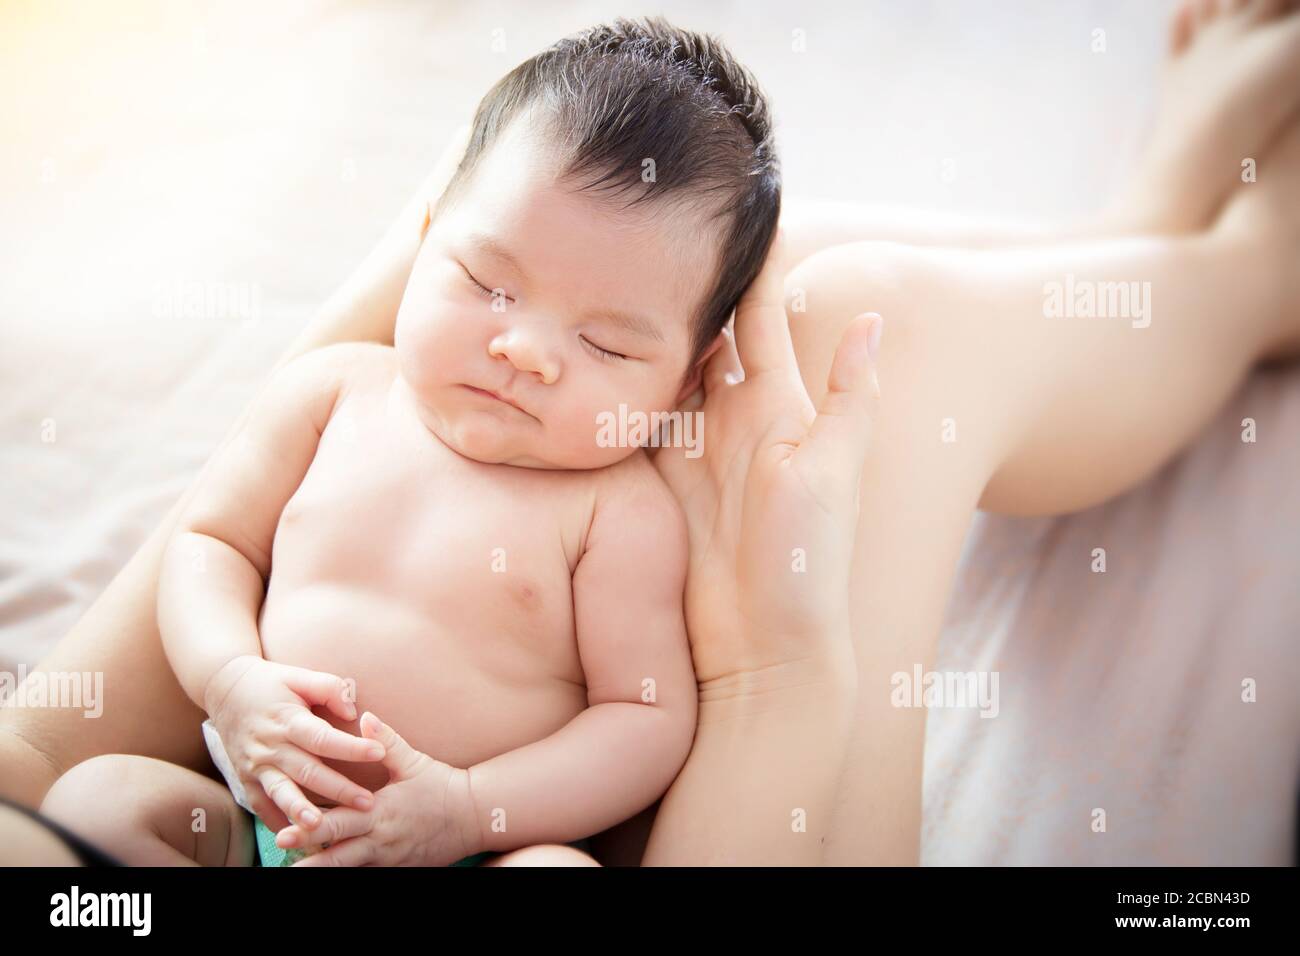 Konzept der Liebe und Familie Beziehung : close up neugeborenen niedlichen kleinen asiatischen Baby Auge schließen Fühlen Sie sich wohl zu schlafen auf der Hand der jungen Mutter an ho Stockfoto